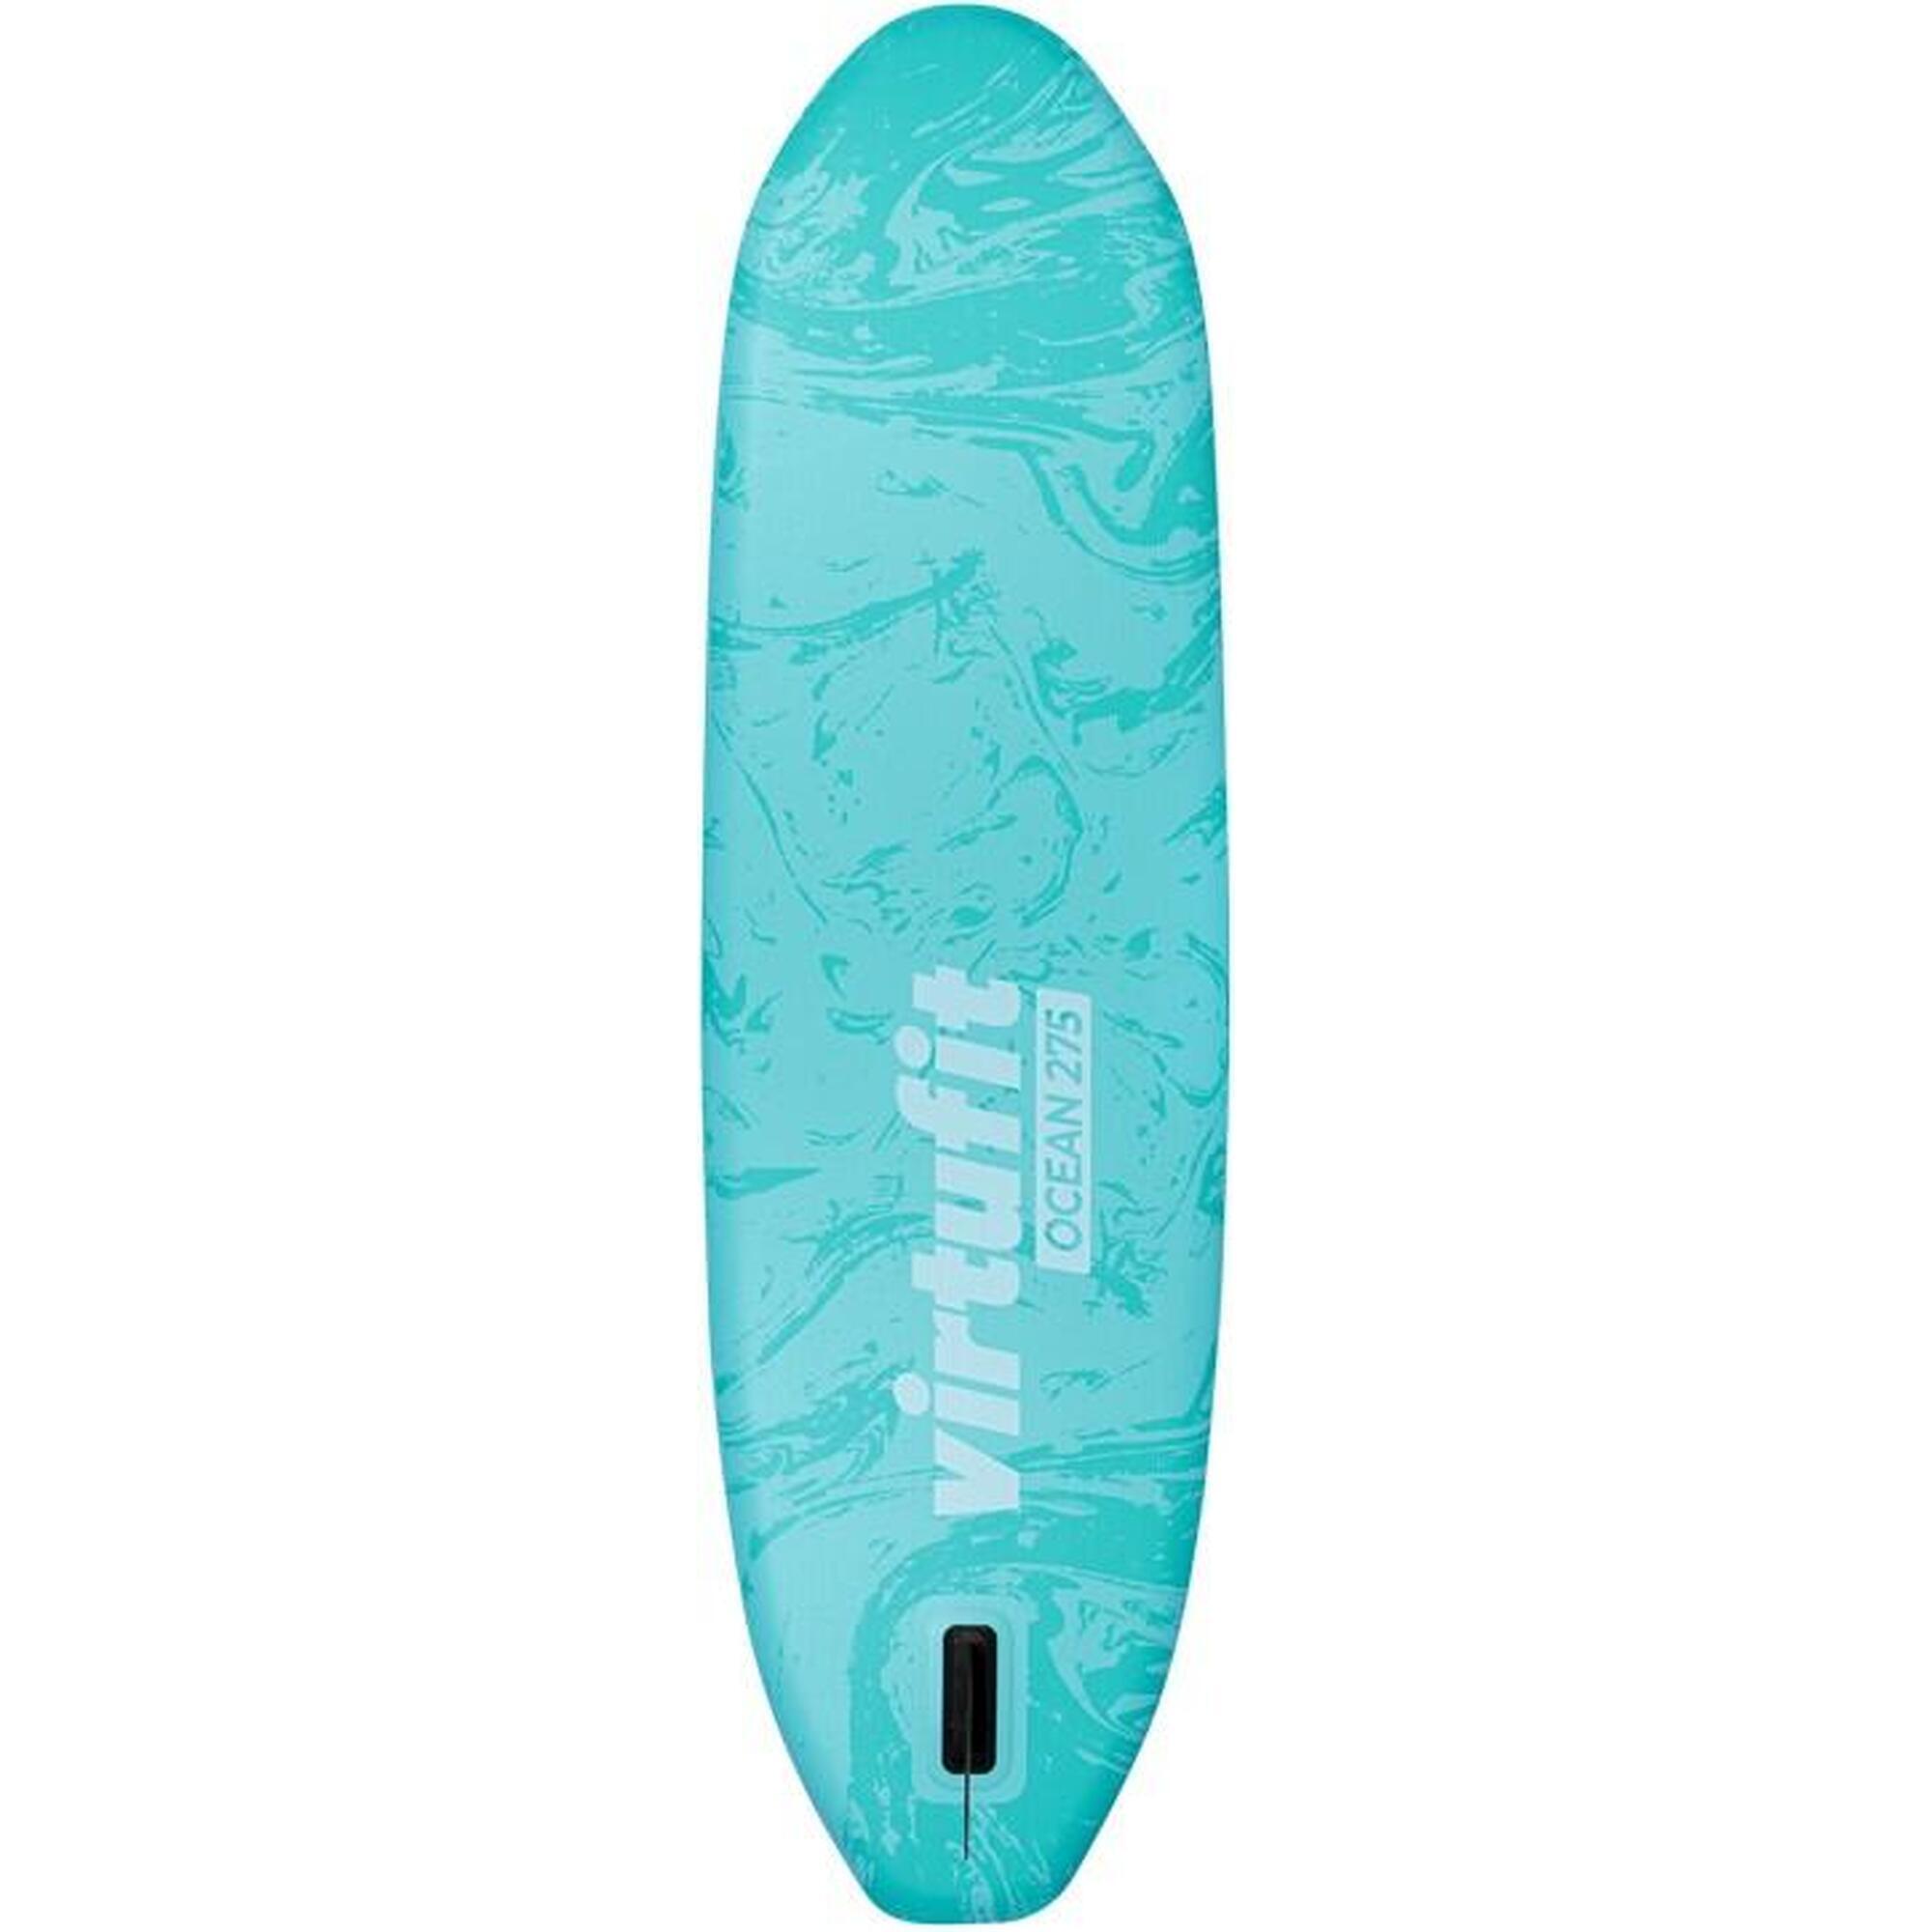 Tabla paddle surf - Ocean 275 - Turquesa - Con accesorios